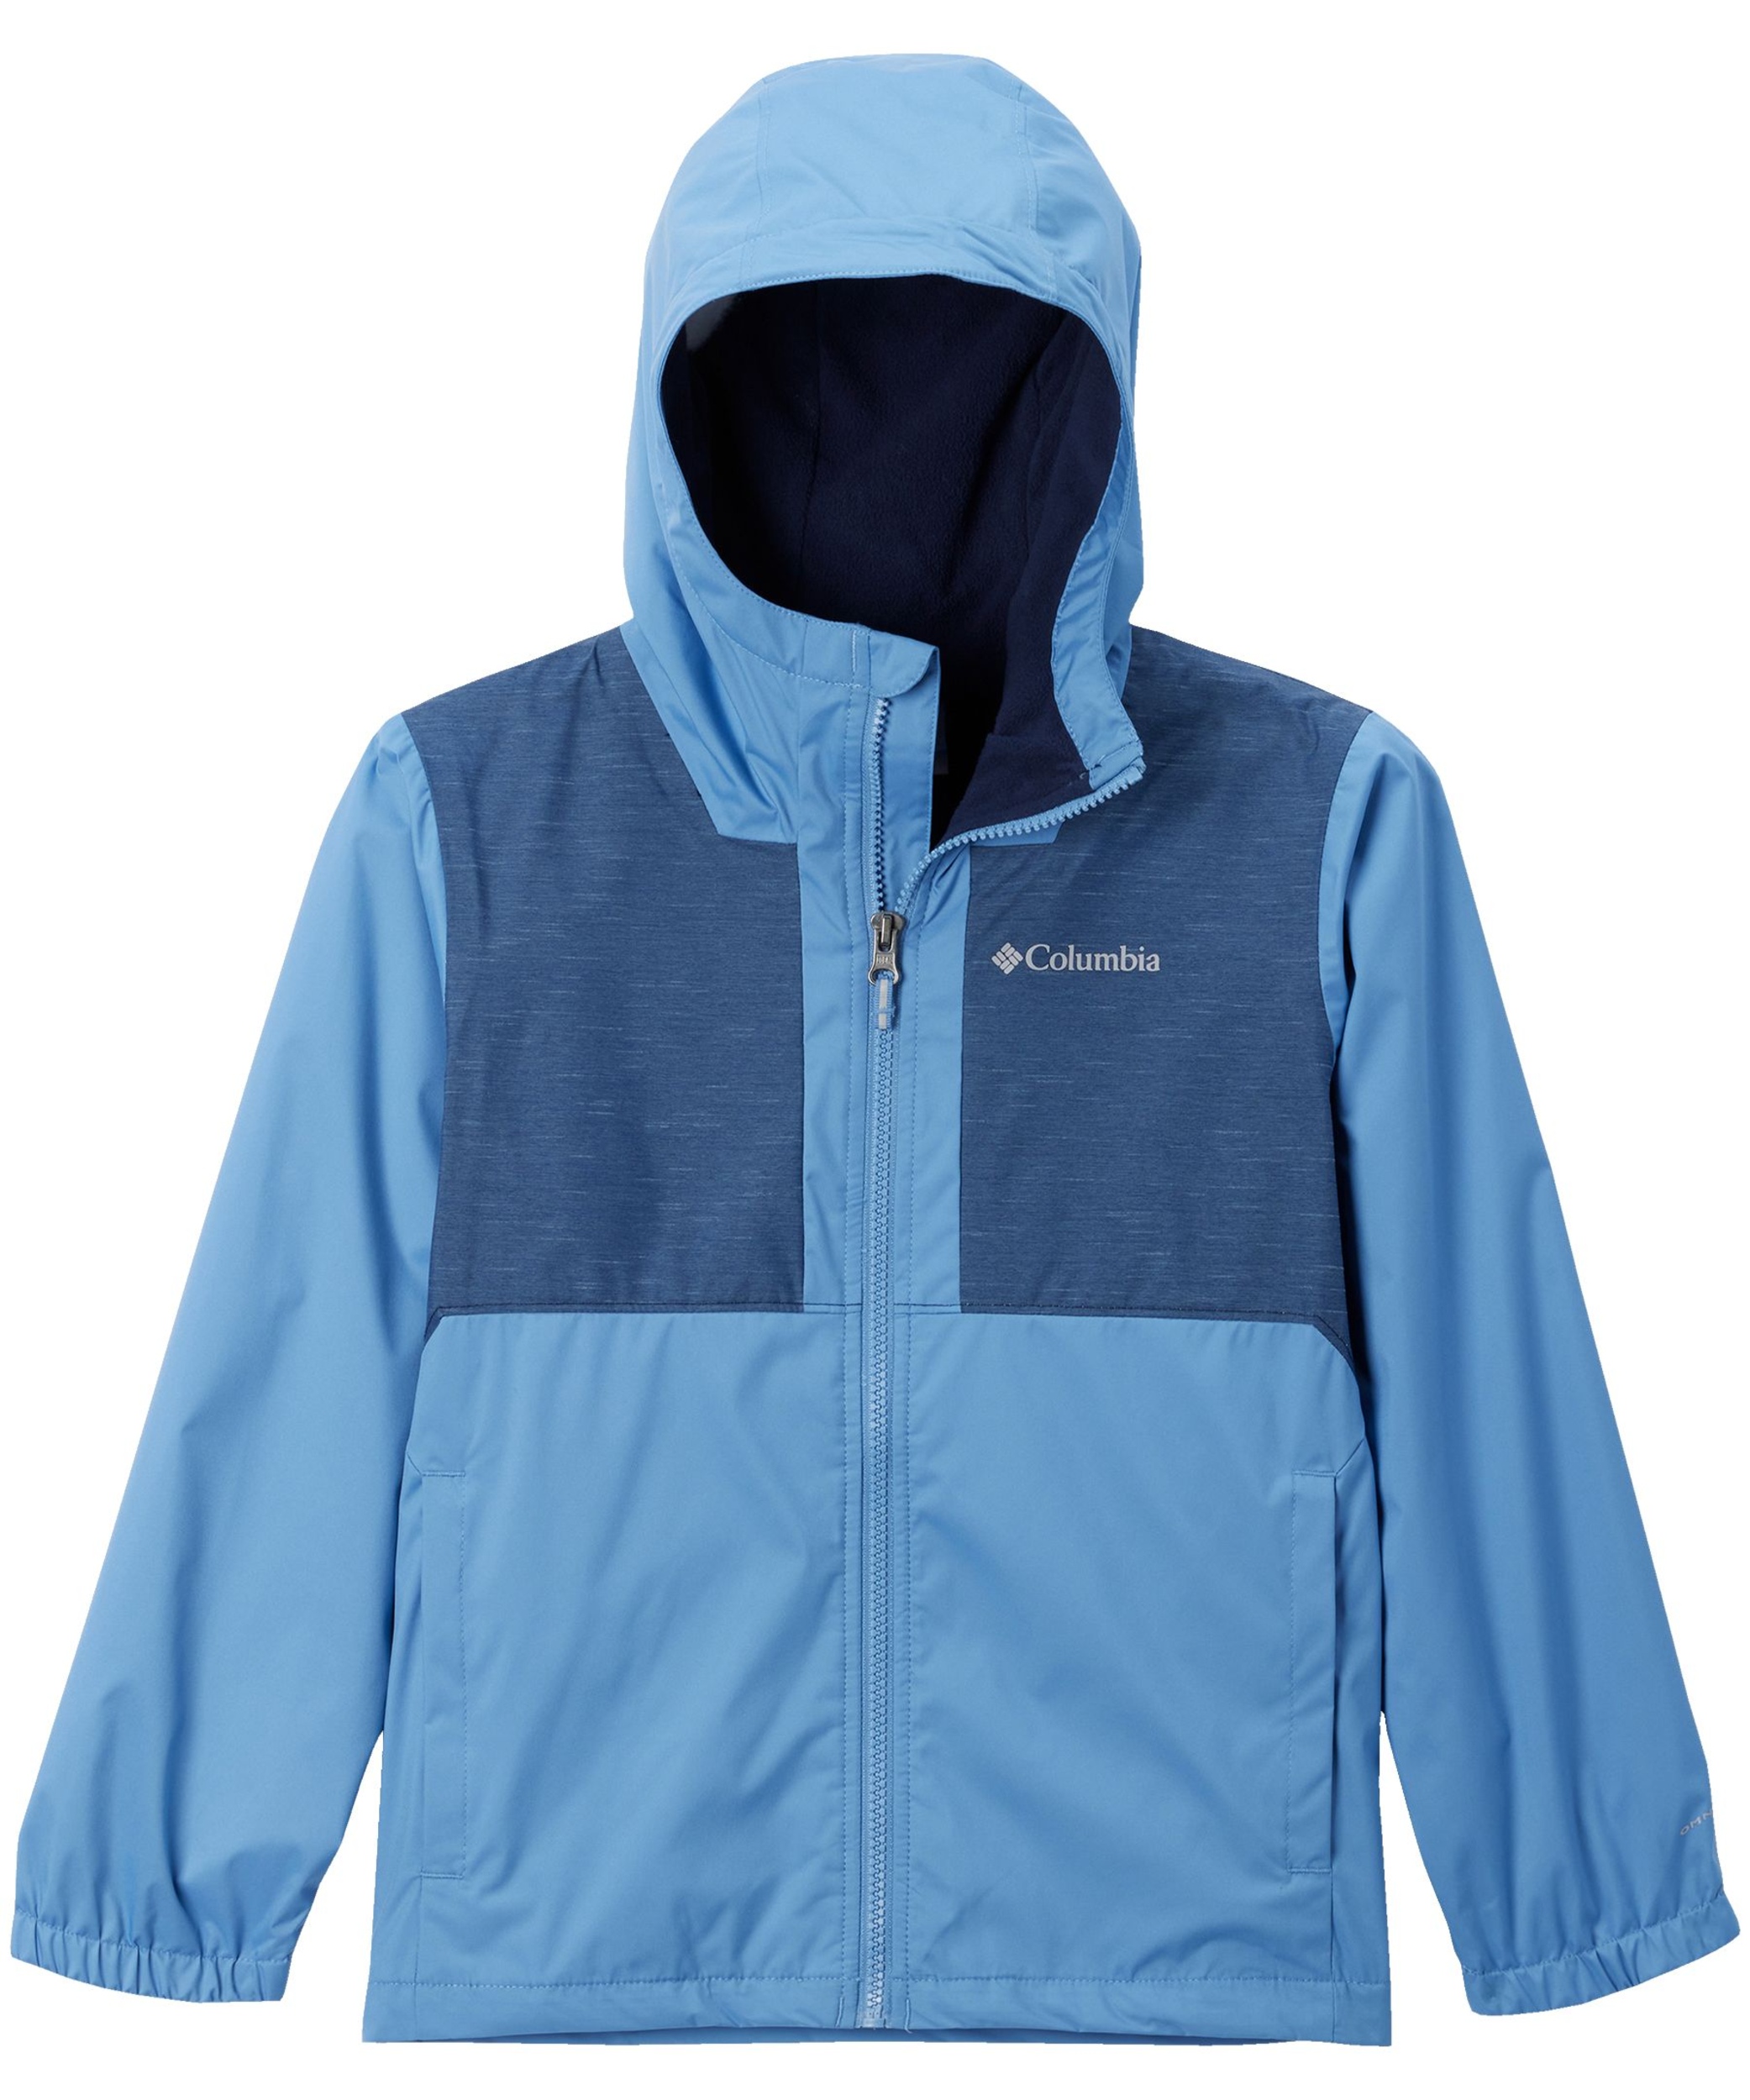 Columbia Youth Unisex Rainy Trails Fleece Lined Jacket | Marks